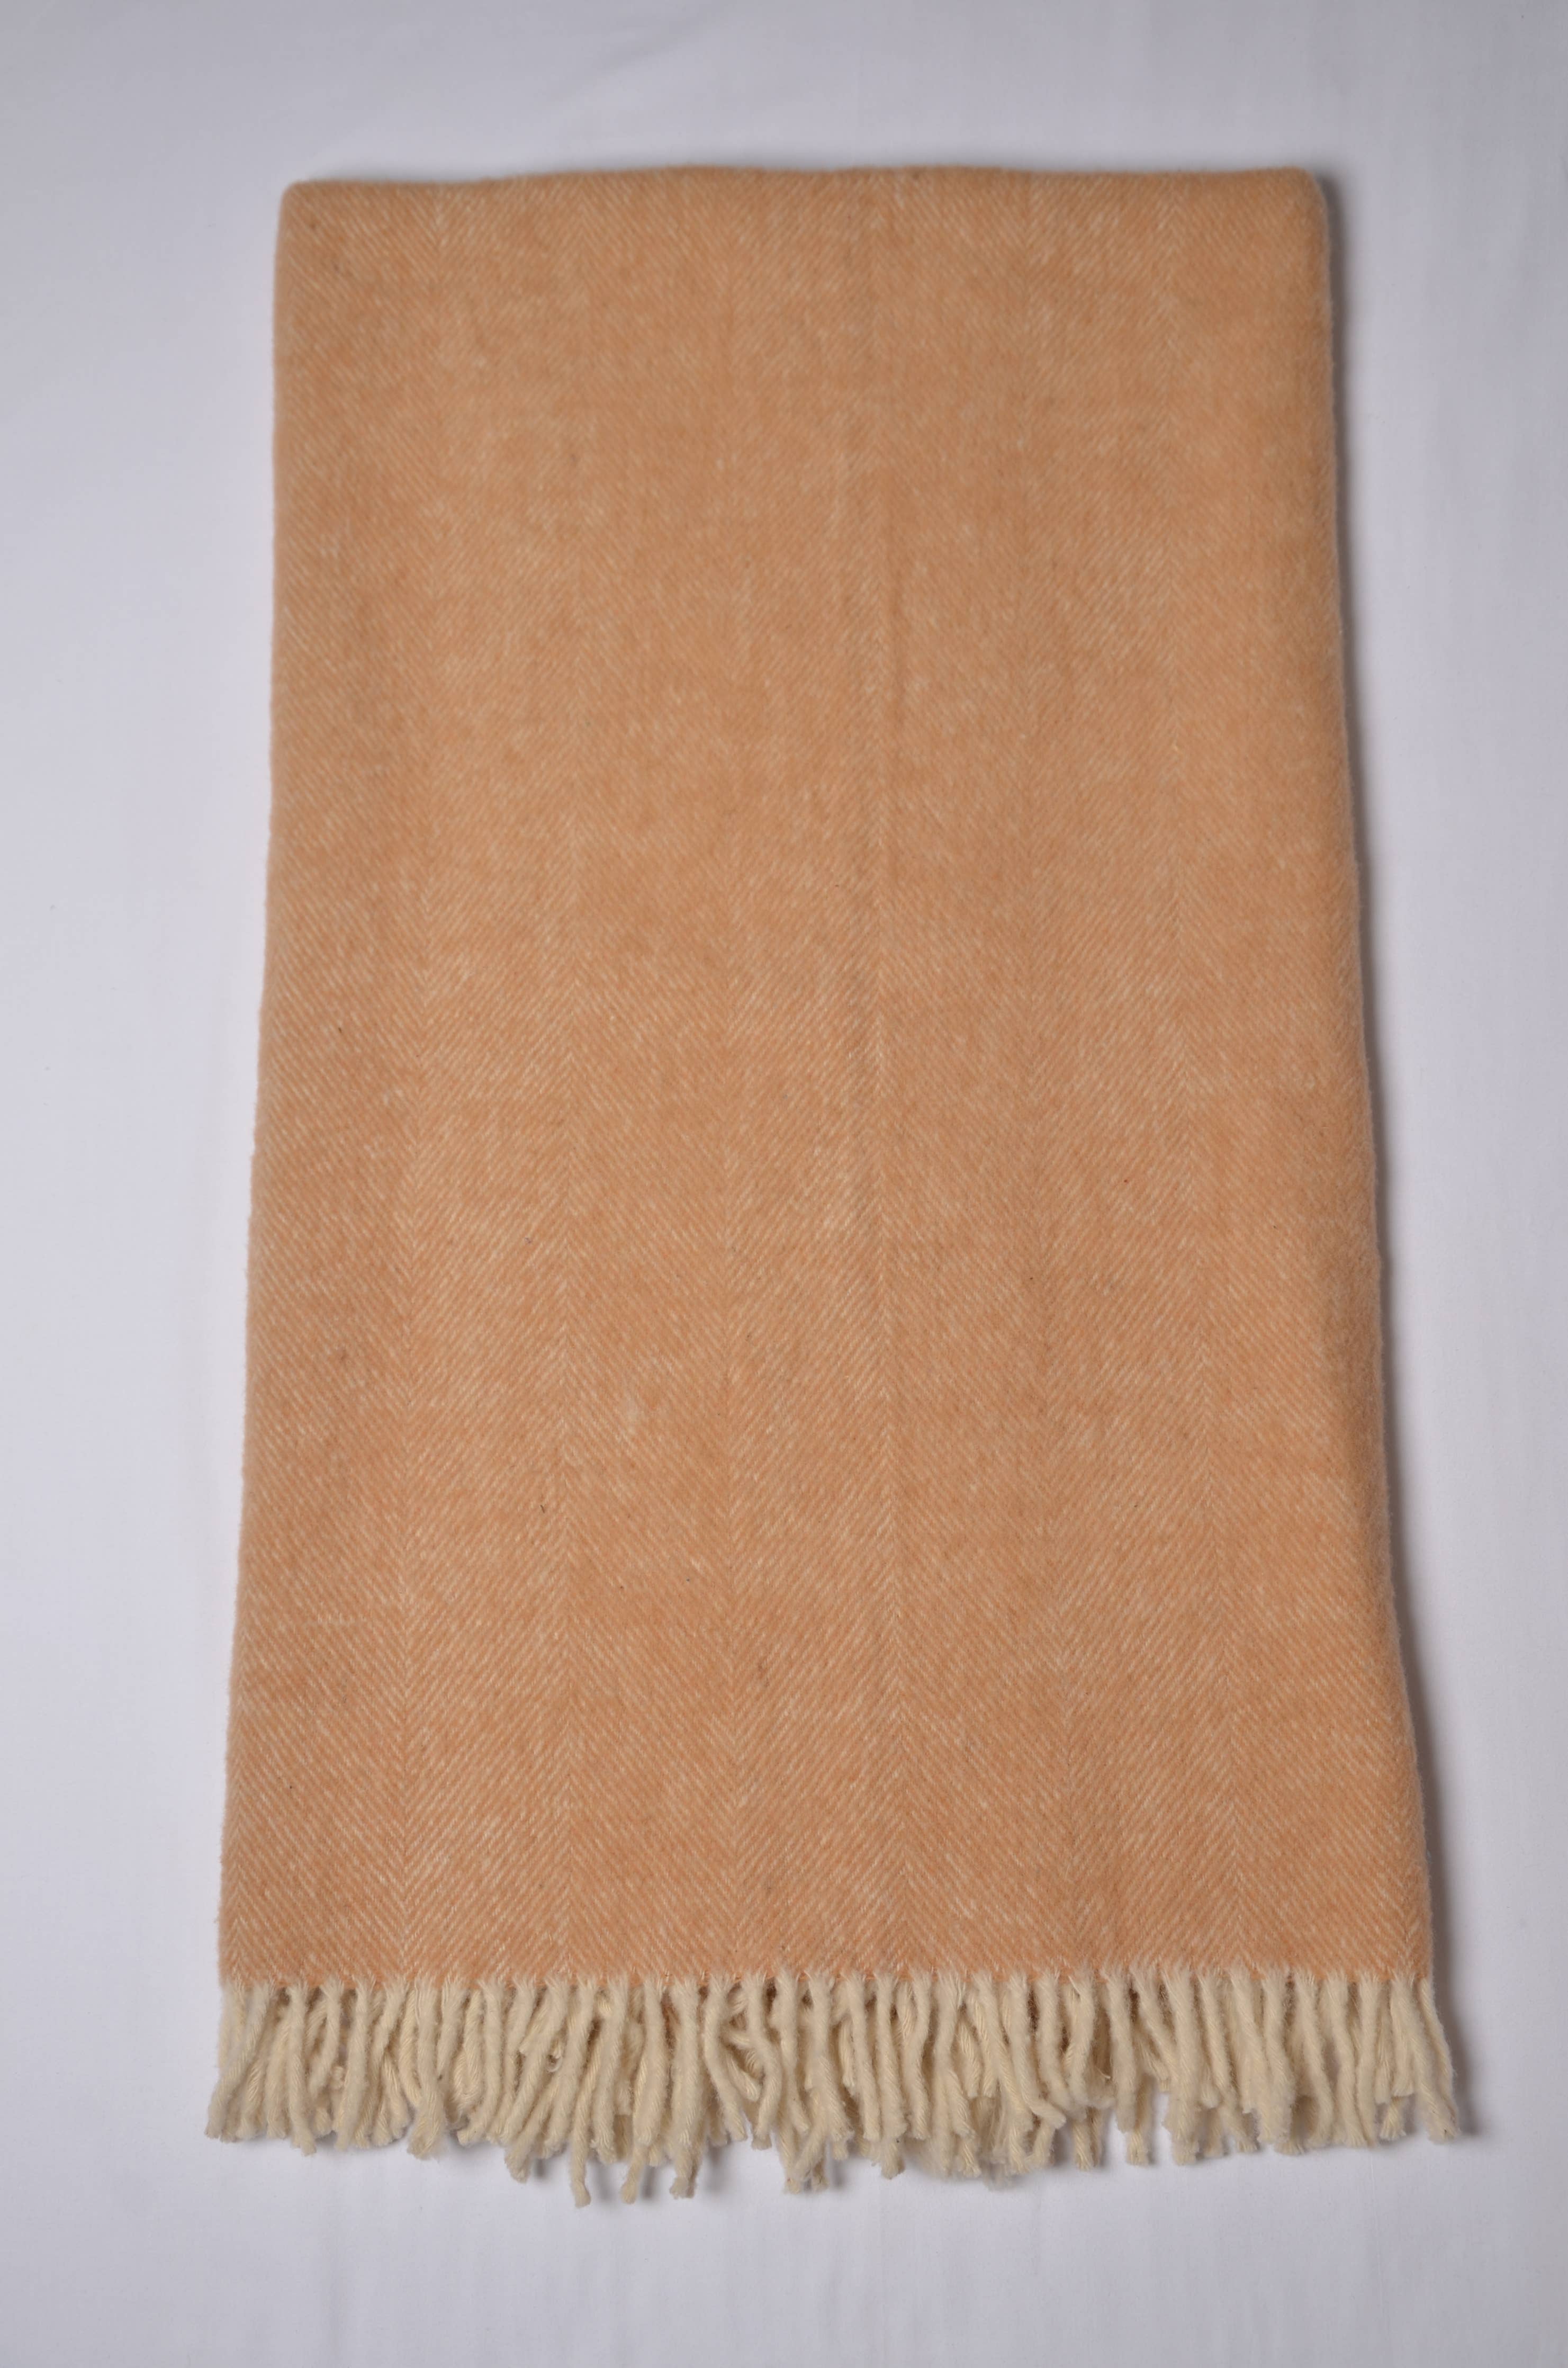 KAFTHAN - Brushed Herringbone Wool Throw Blankets 50"x70" (7802956284131)